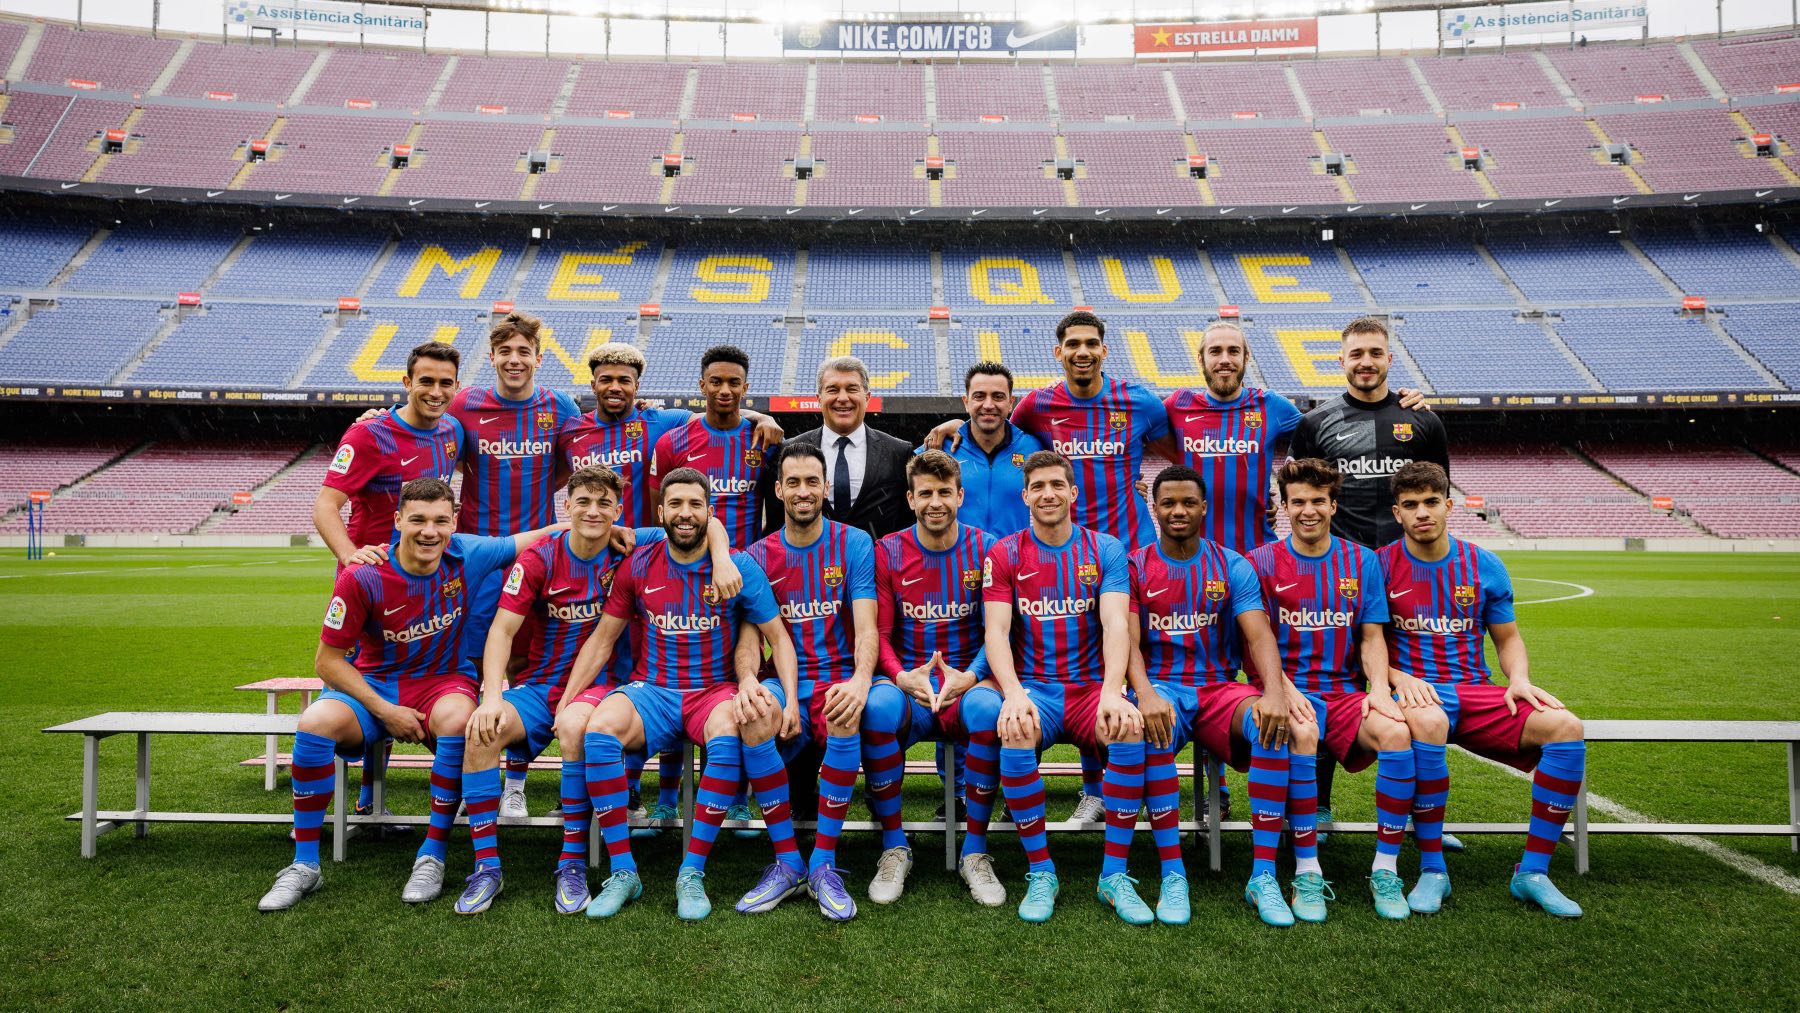 Jutglá, Abde, Araujo, entre los jugadores ‘Made in La Masía’ del Barça.